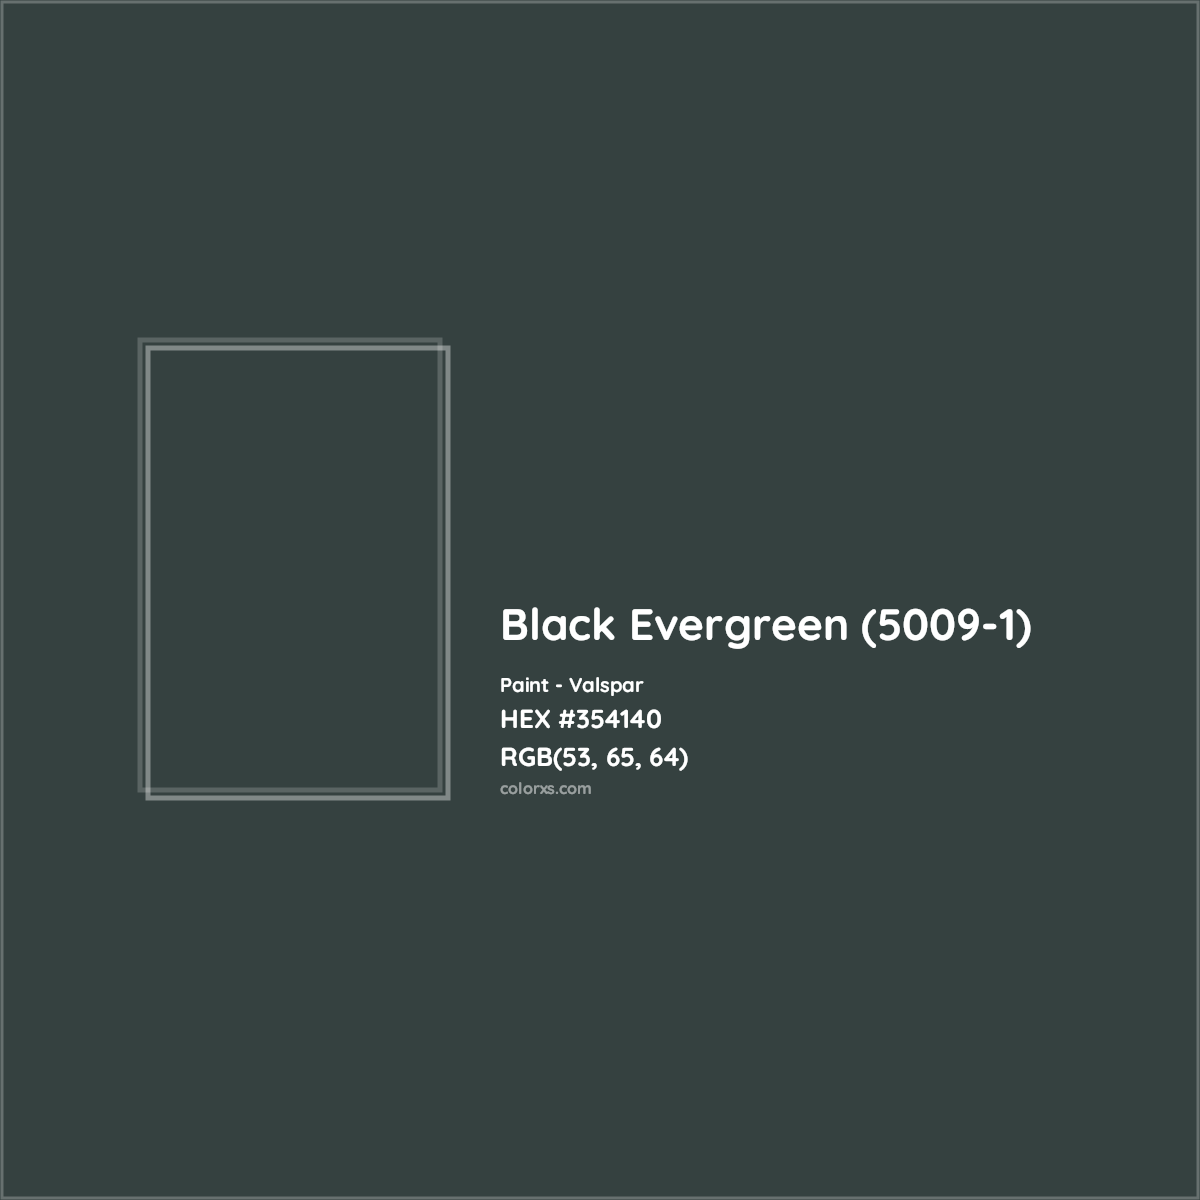 HEX #354140 Black Evergreen (5009-1) Paint Valspar - Color Code